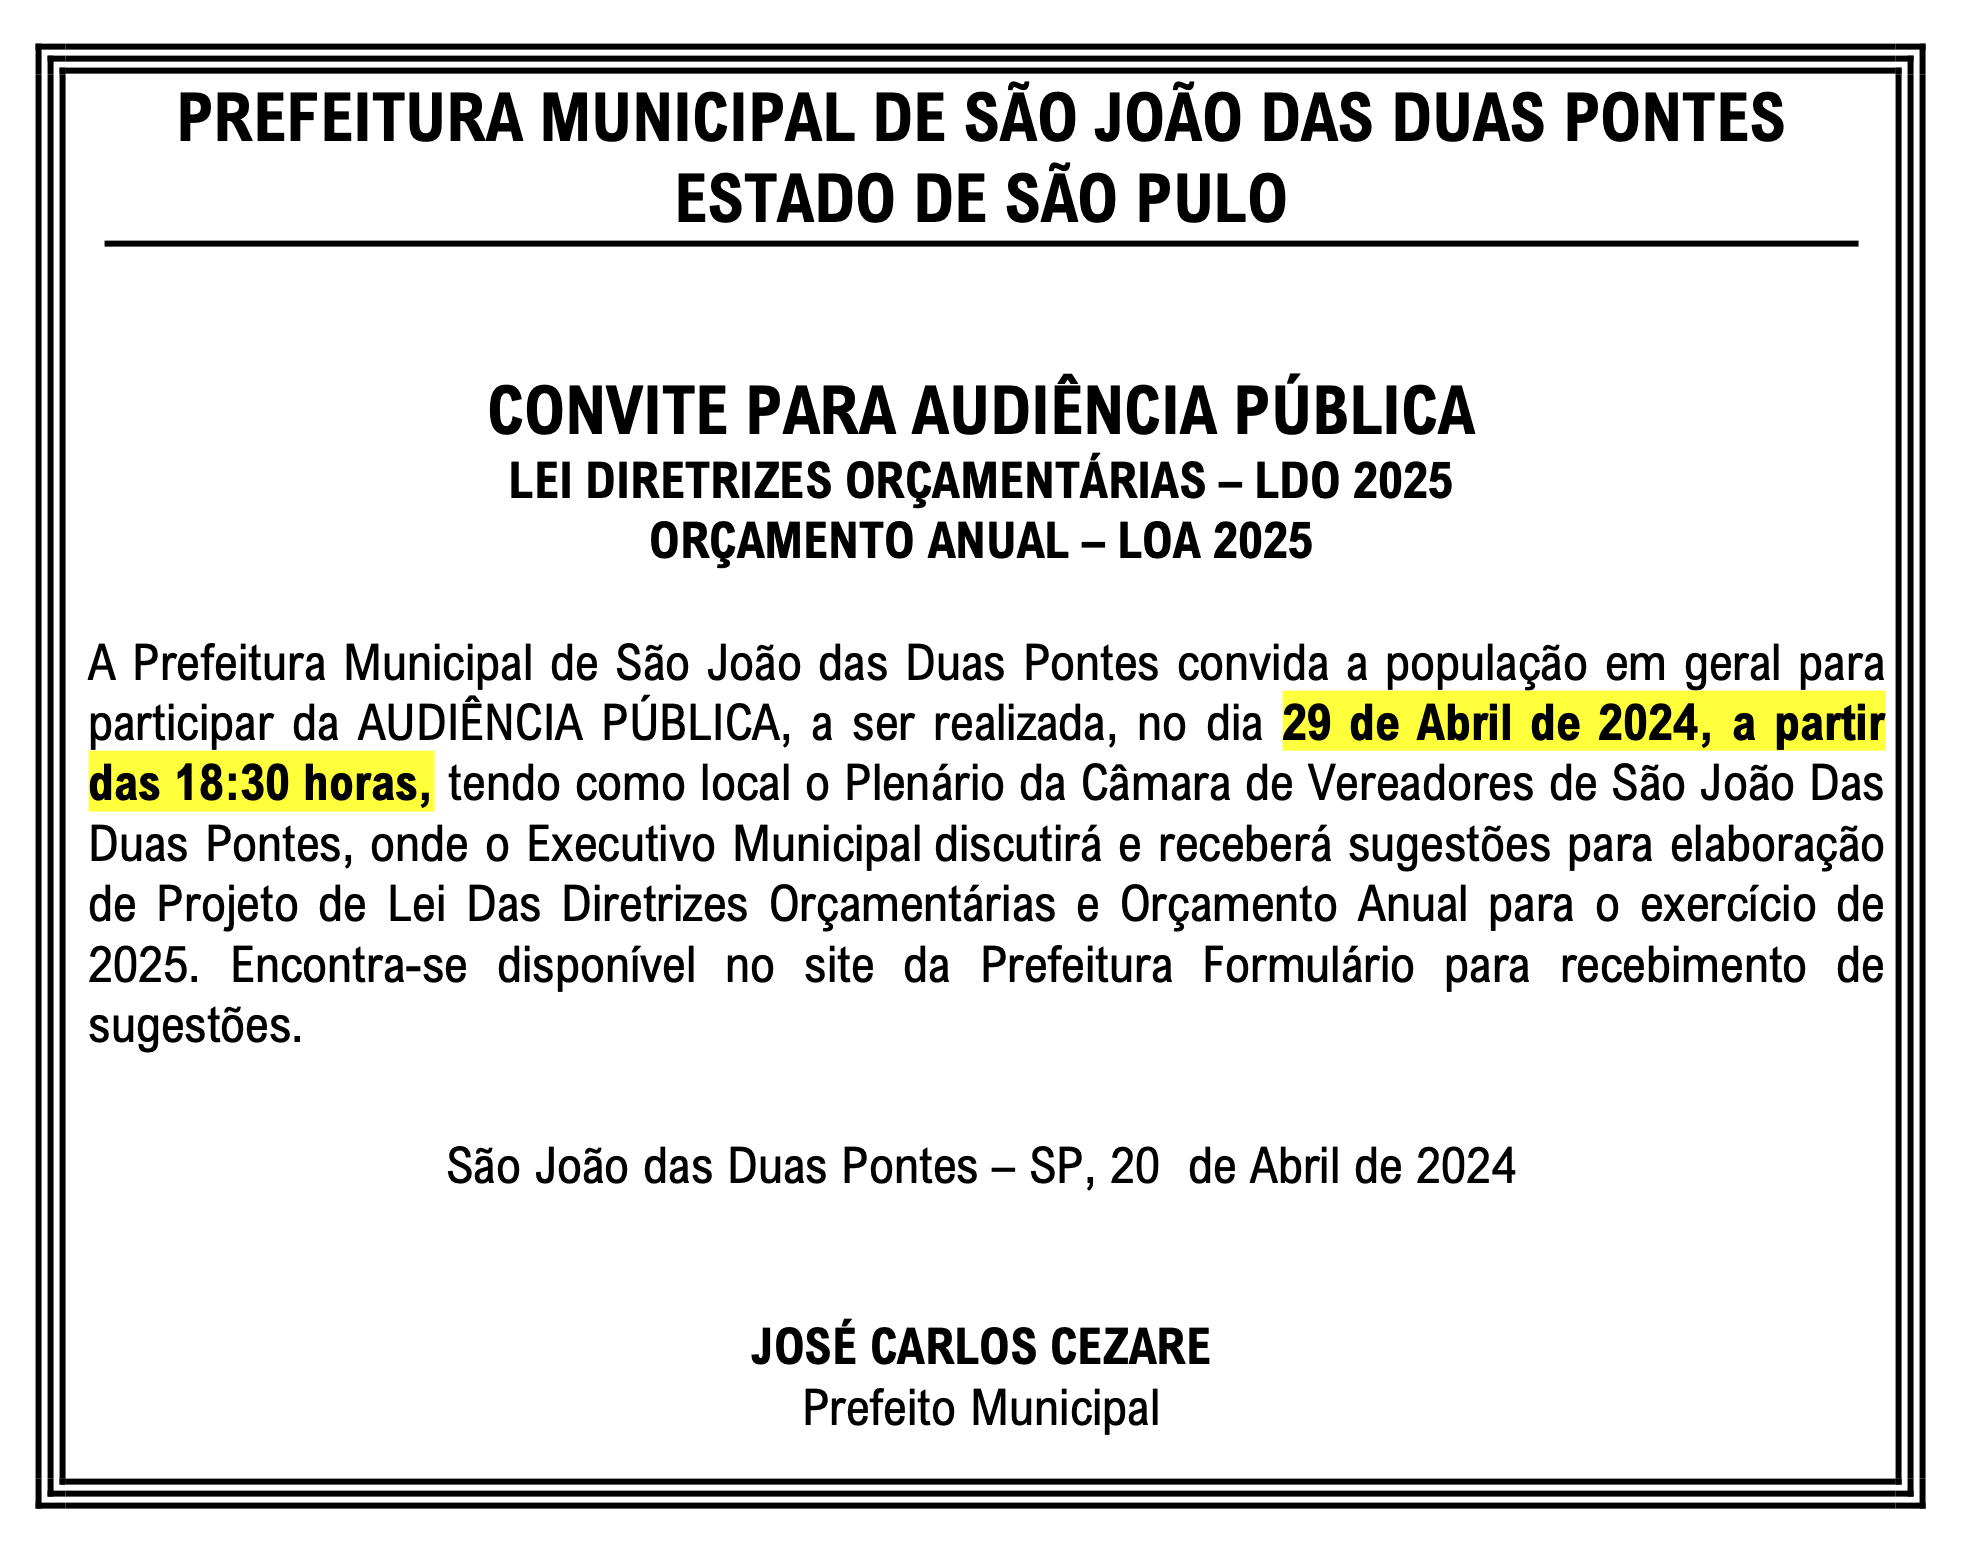 Convite - Audiência Pública - LOA e LDO